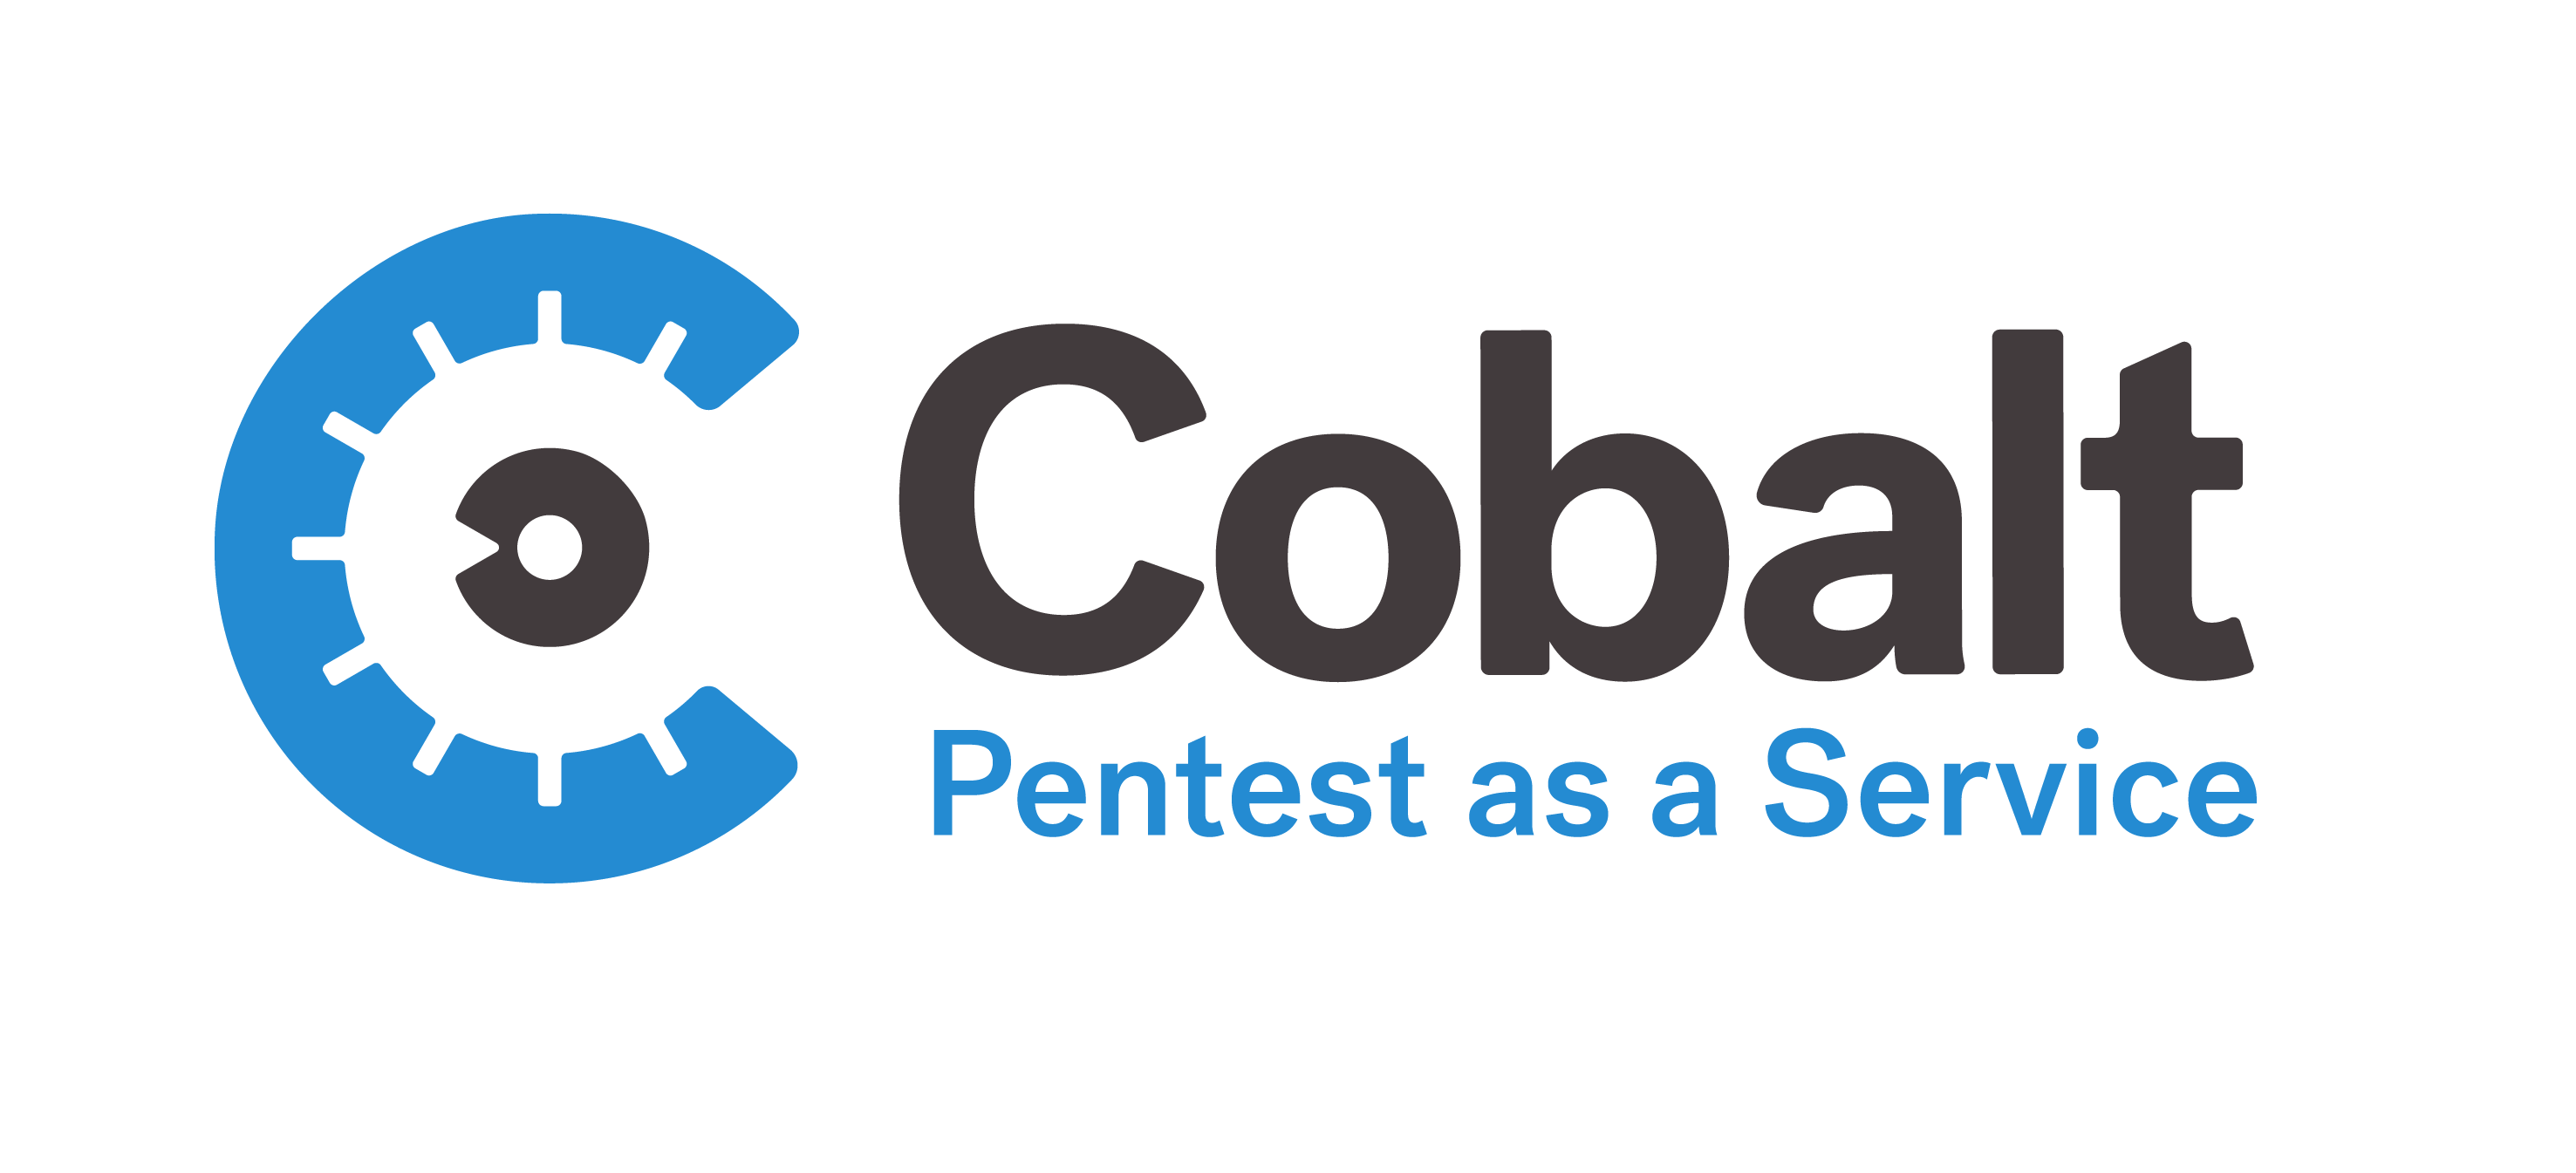 Cobalt.io raises $29